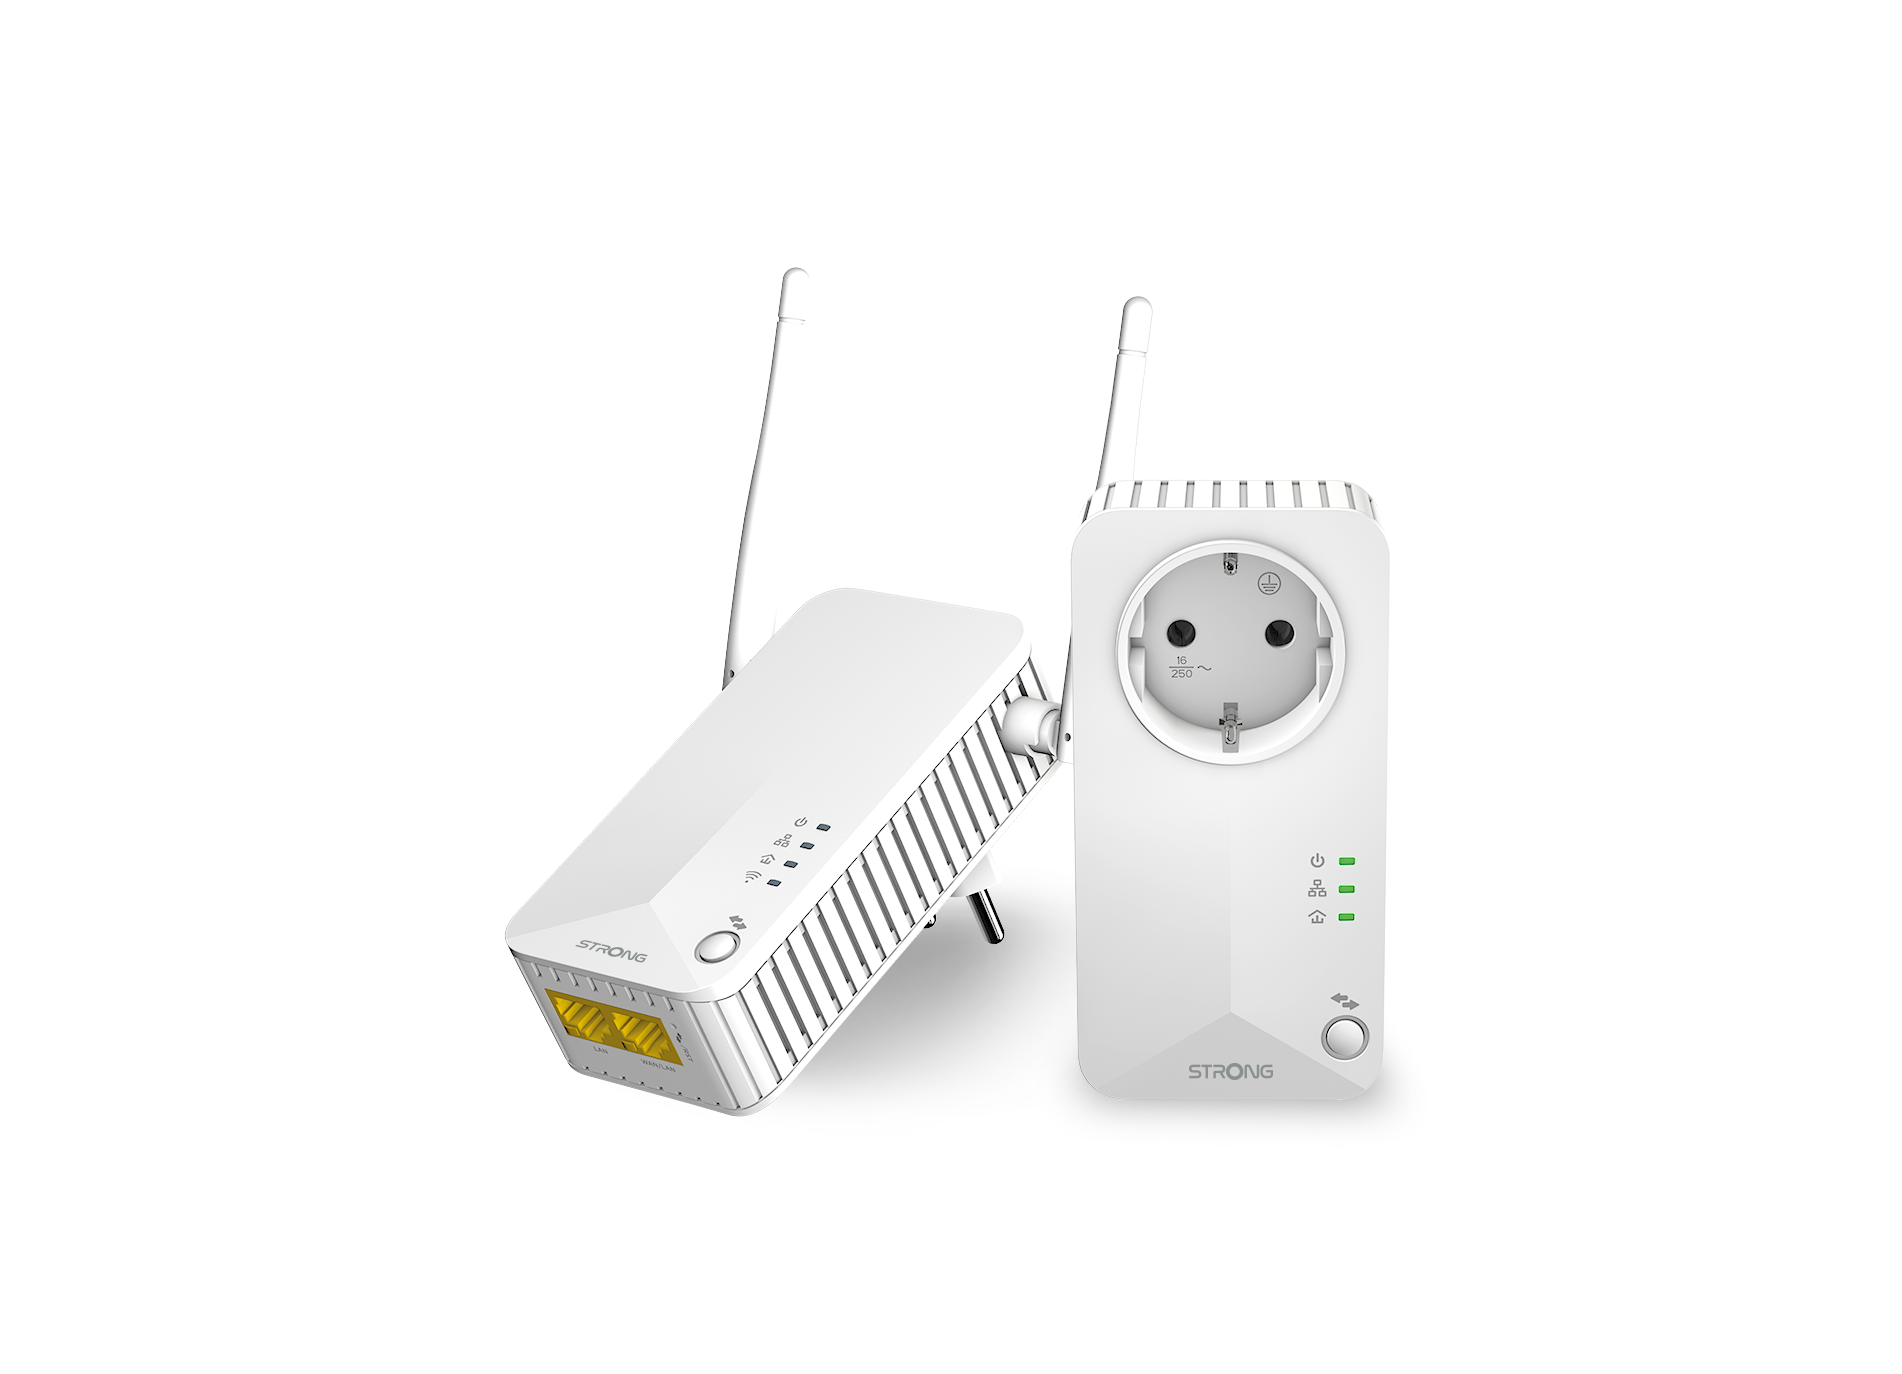 STRONG Powerline 600 600 Powerline Mbit/s LAN Duo WLAN kabelgebunden, EU Set kabellos